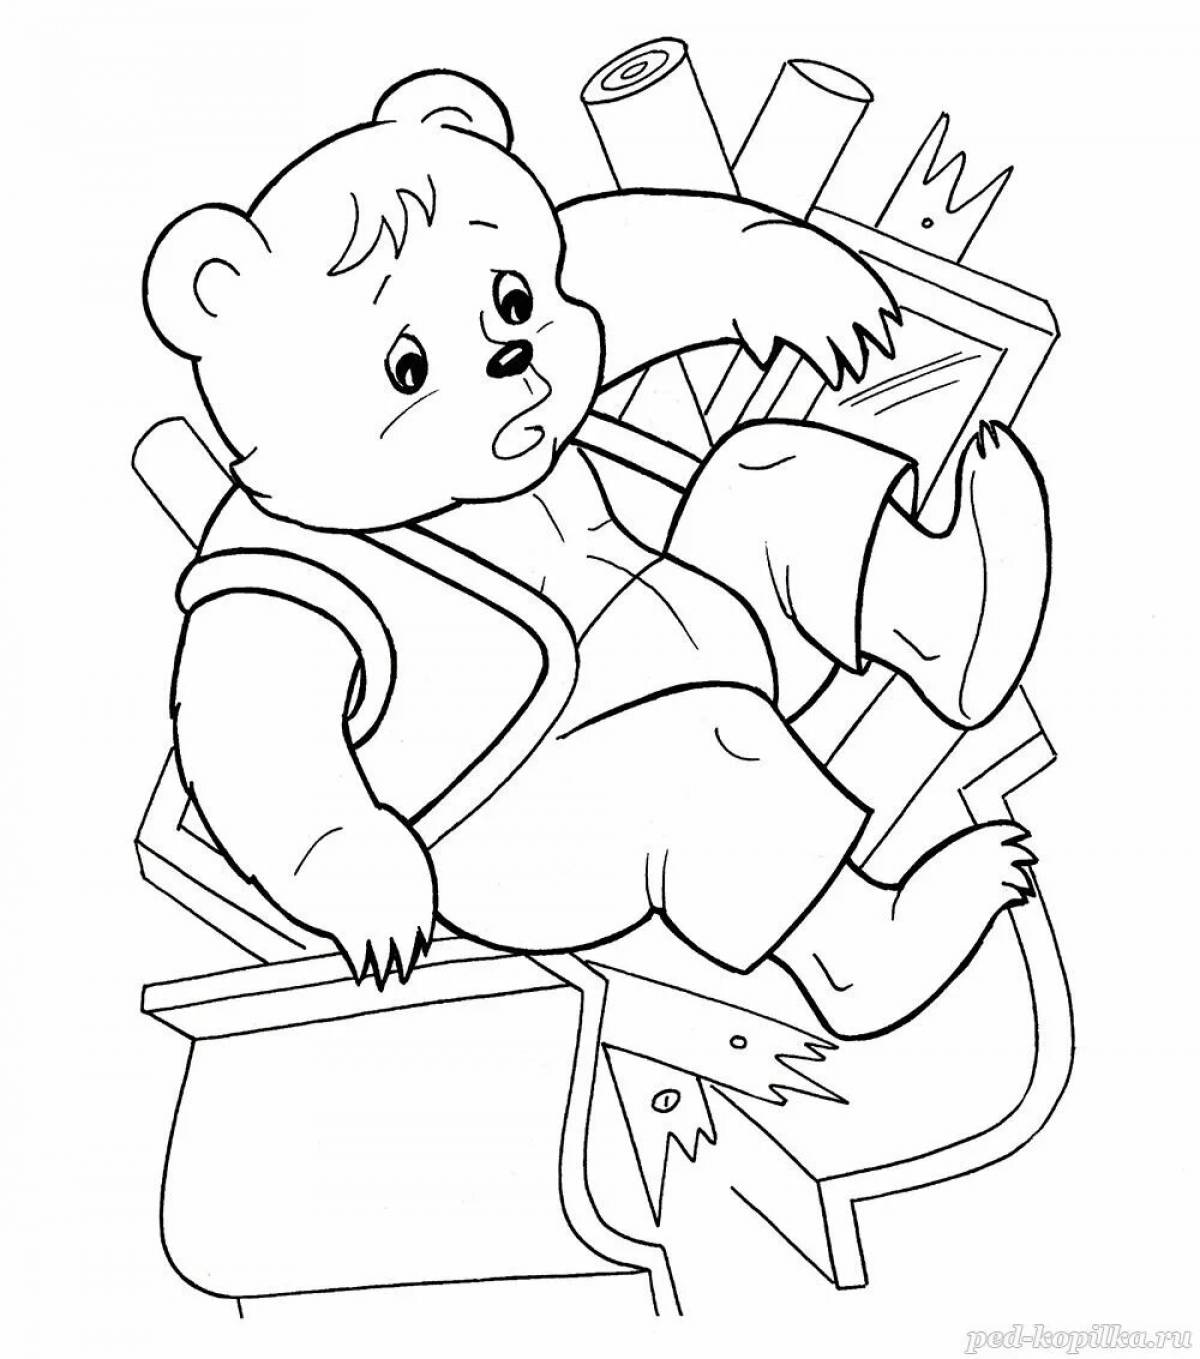 Comic bear-teremok coloring book